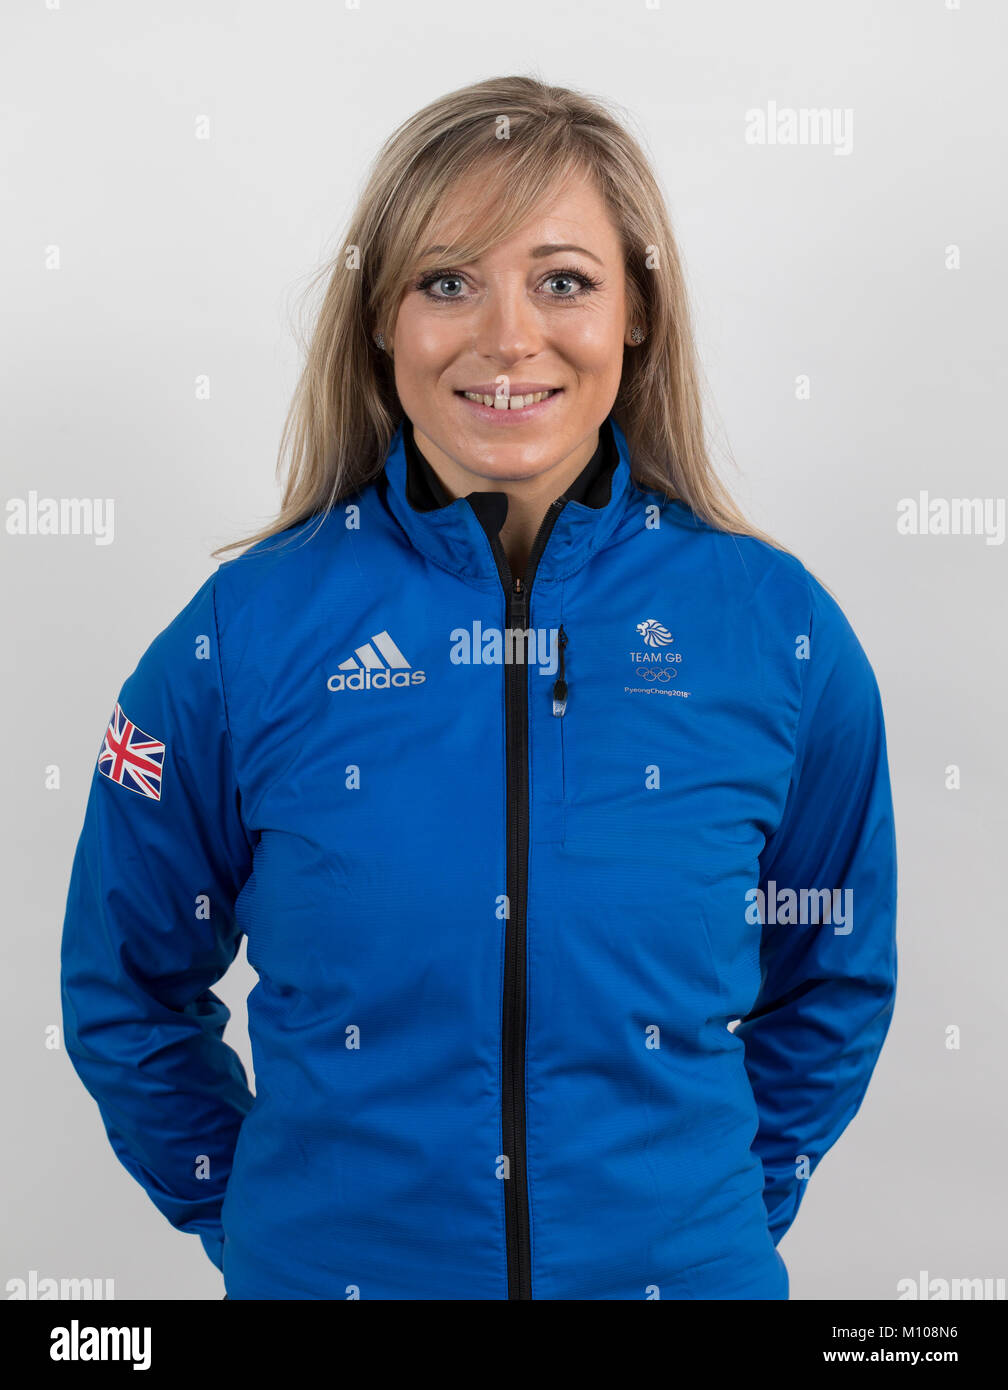 Adidas, Stockport, Reino Unido. 23 ene, 2018. PyeongChang 2018 Team GB  Ensamblar Reunión; retrato de Emily Sarsfield Team GB esquiadores freestyle  PyeongChang tomar parte en los Juegos Olímpicos de Invierno de 2018